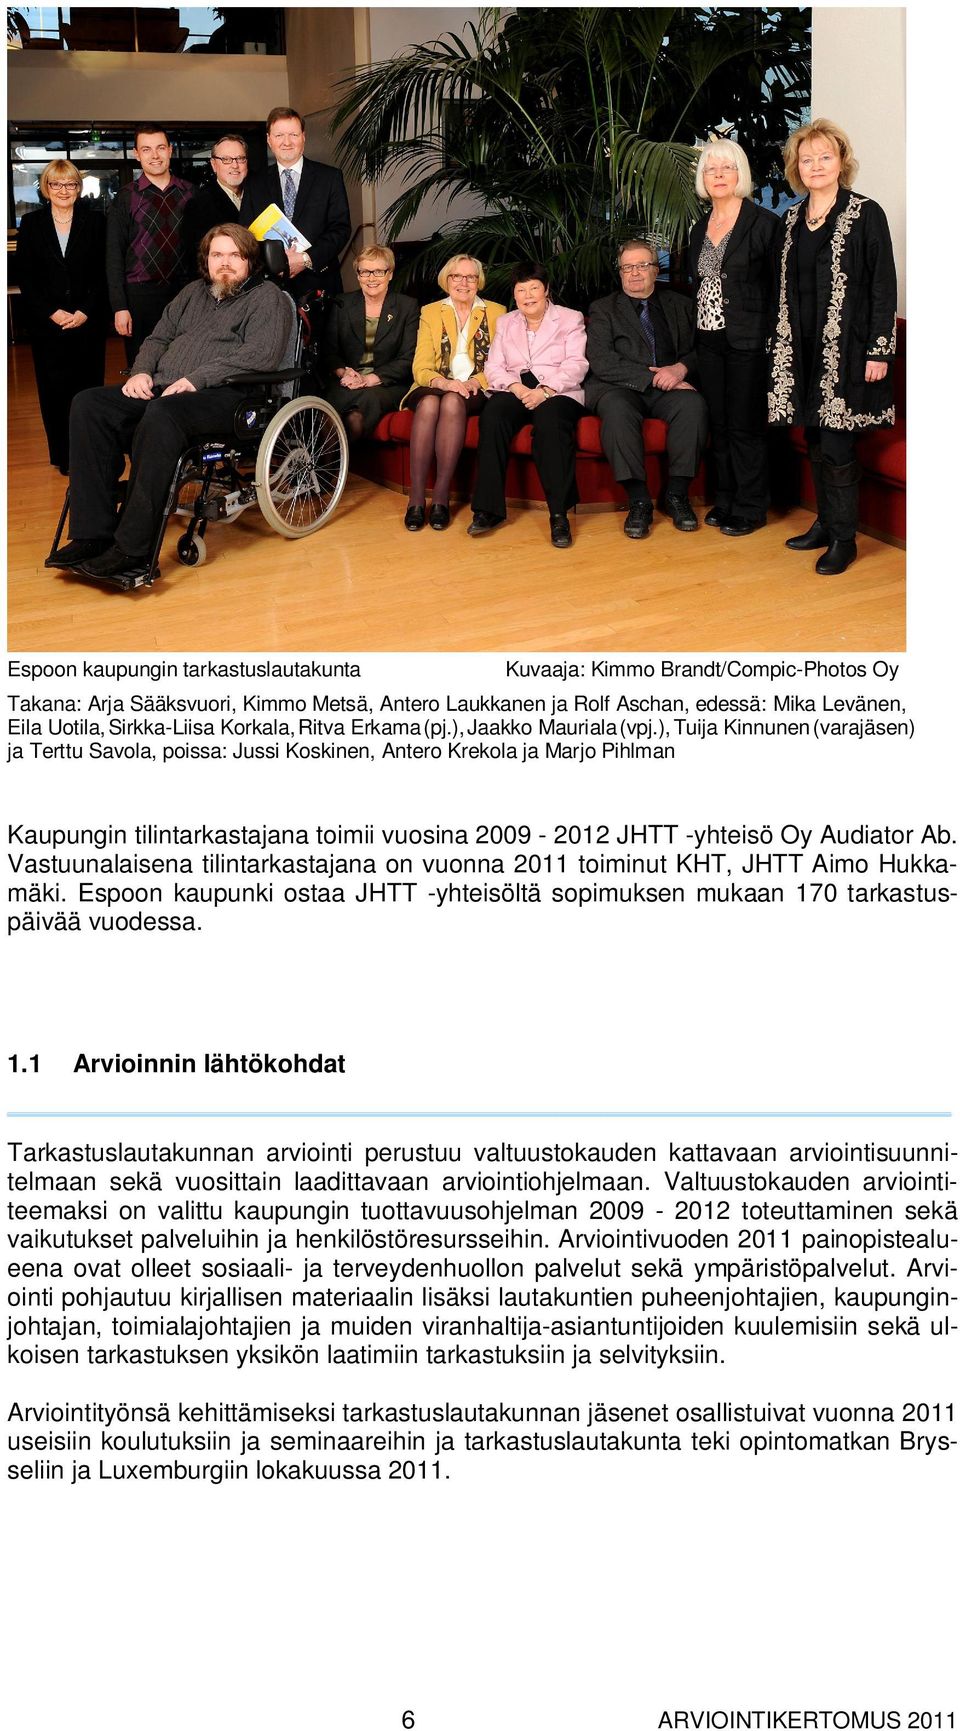 ), Tuija Kinnunen (varajäsen) ja Terttu Savola, poissa: Jussi Koskinen, Antero Krekola ja Marjo Pihlman Kaupungin tilintarkastajana toimii vuosina 2009-2012 JHTT -yhteisö Oy Audiator Ab.